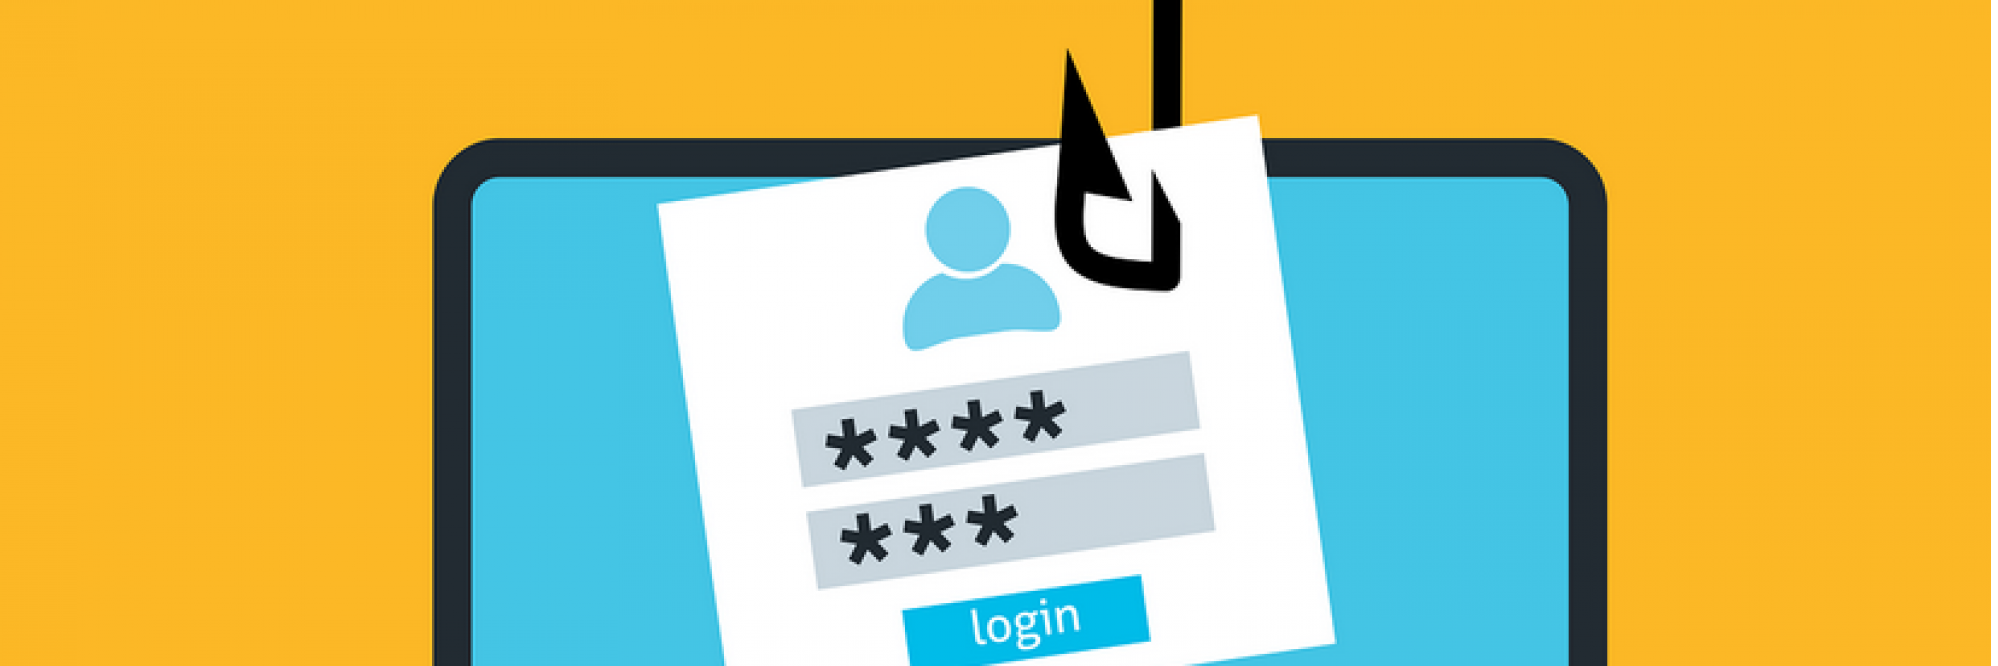 Vorsicht vor Phishing-Attacken: 6 Tipps, um sich zu schützen